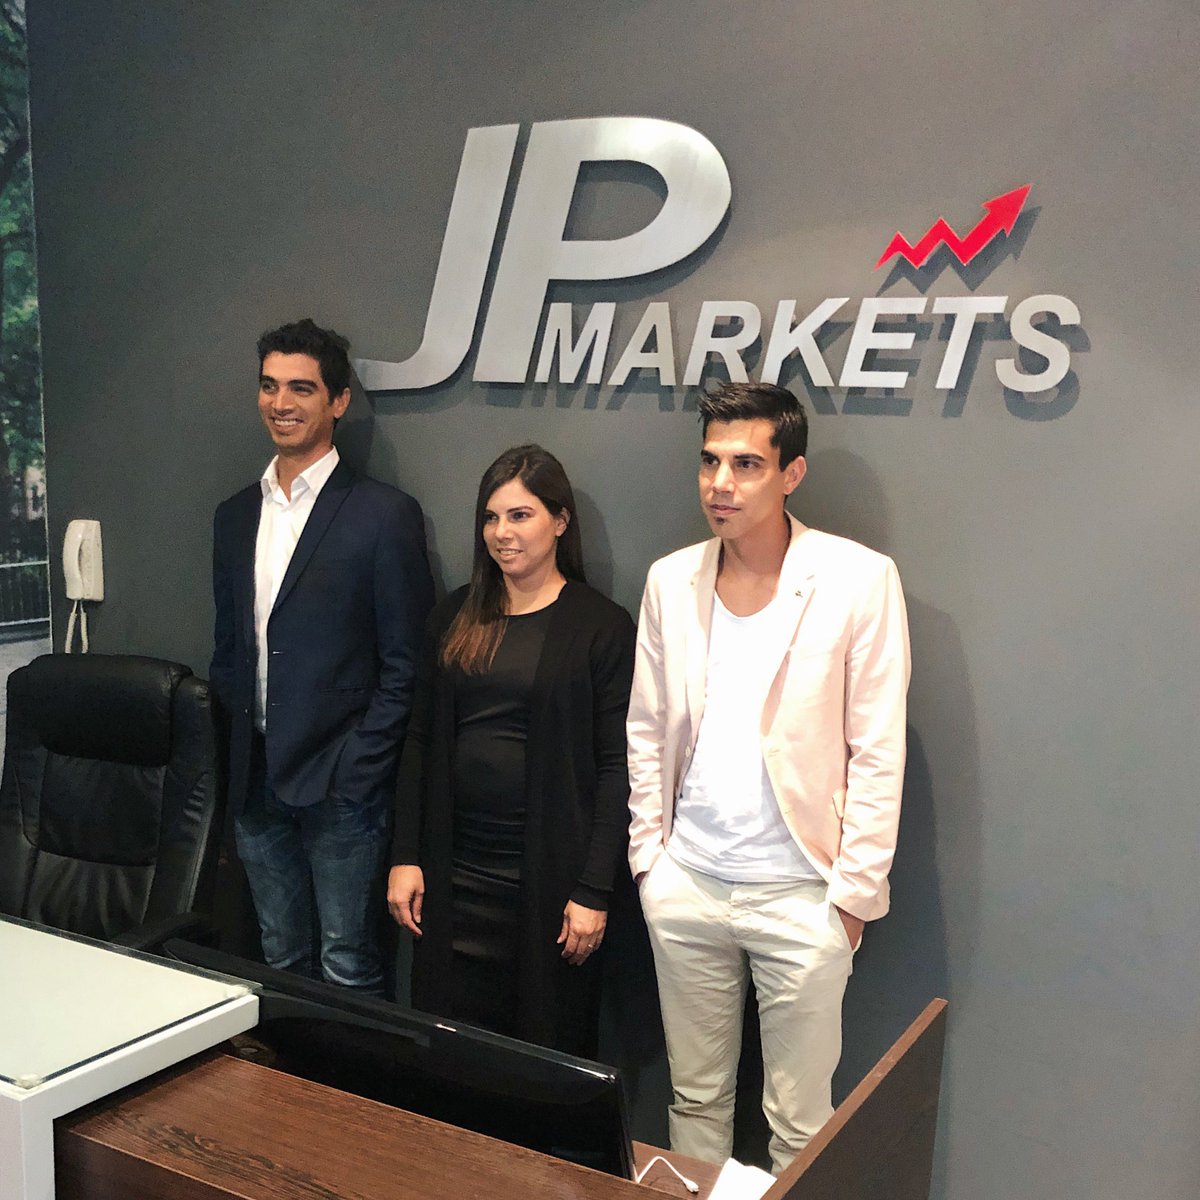 Jp markets group